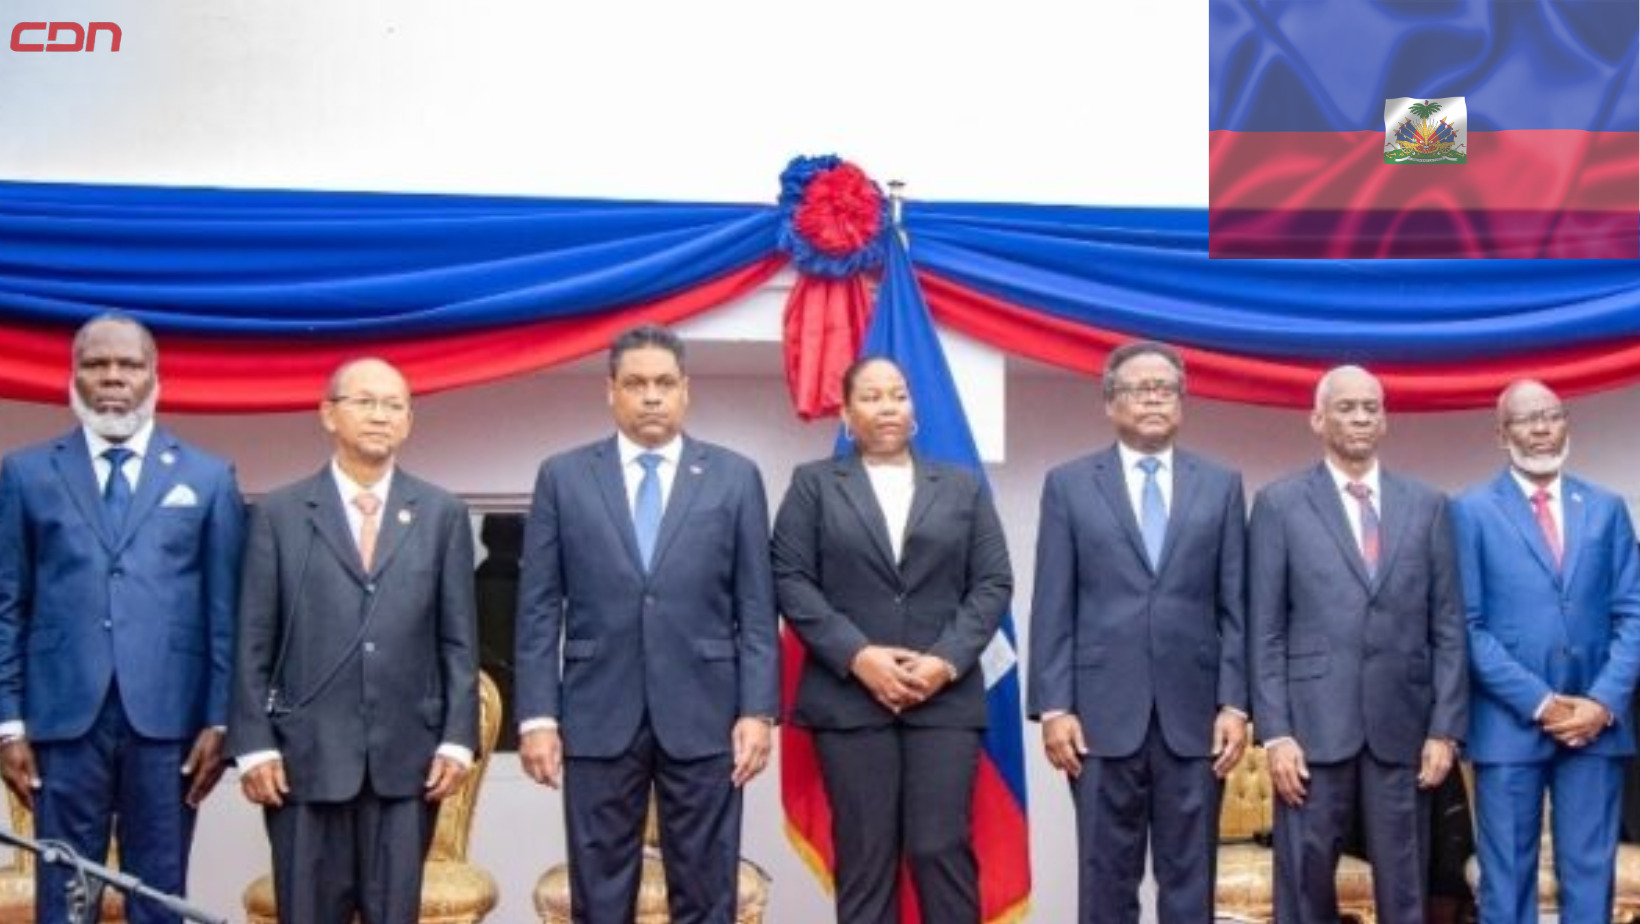 Algunos de los miembros del Consejo Presidencial de Transición de Haití. Foto: Fuente externa